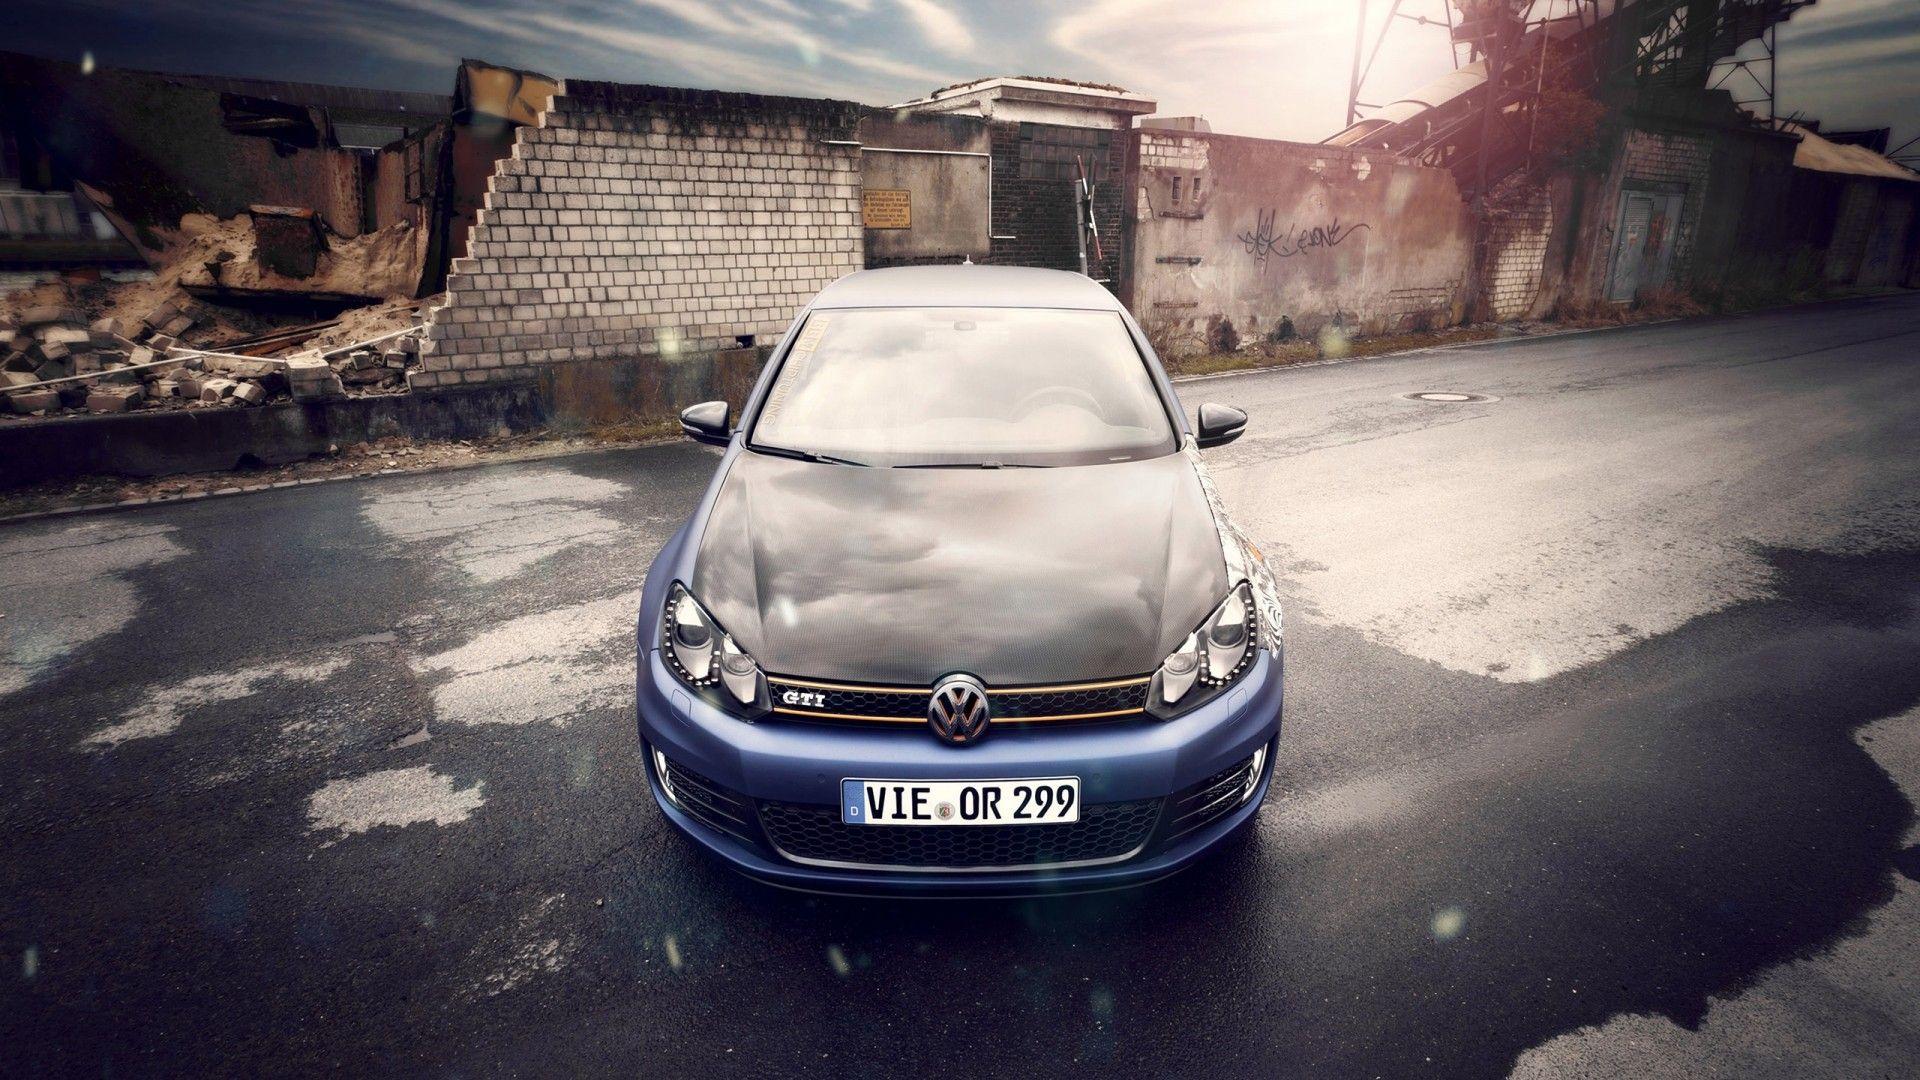 Fine HDQ Volkswagen Image. Nice Full HD Wallpaper